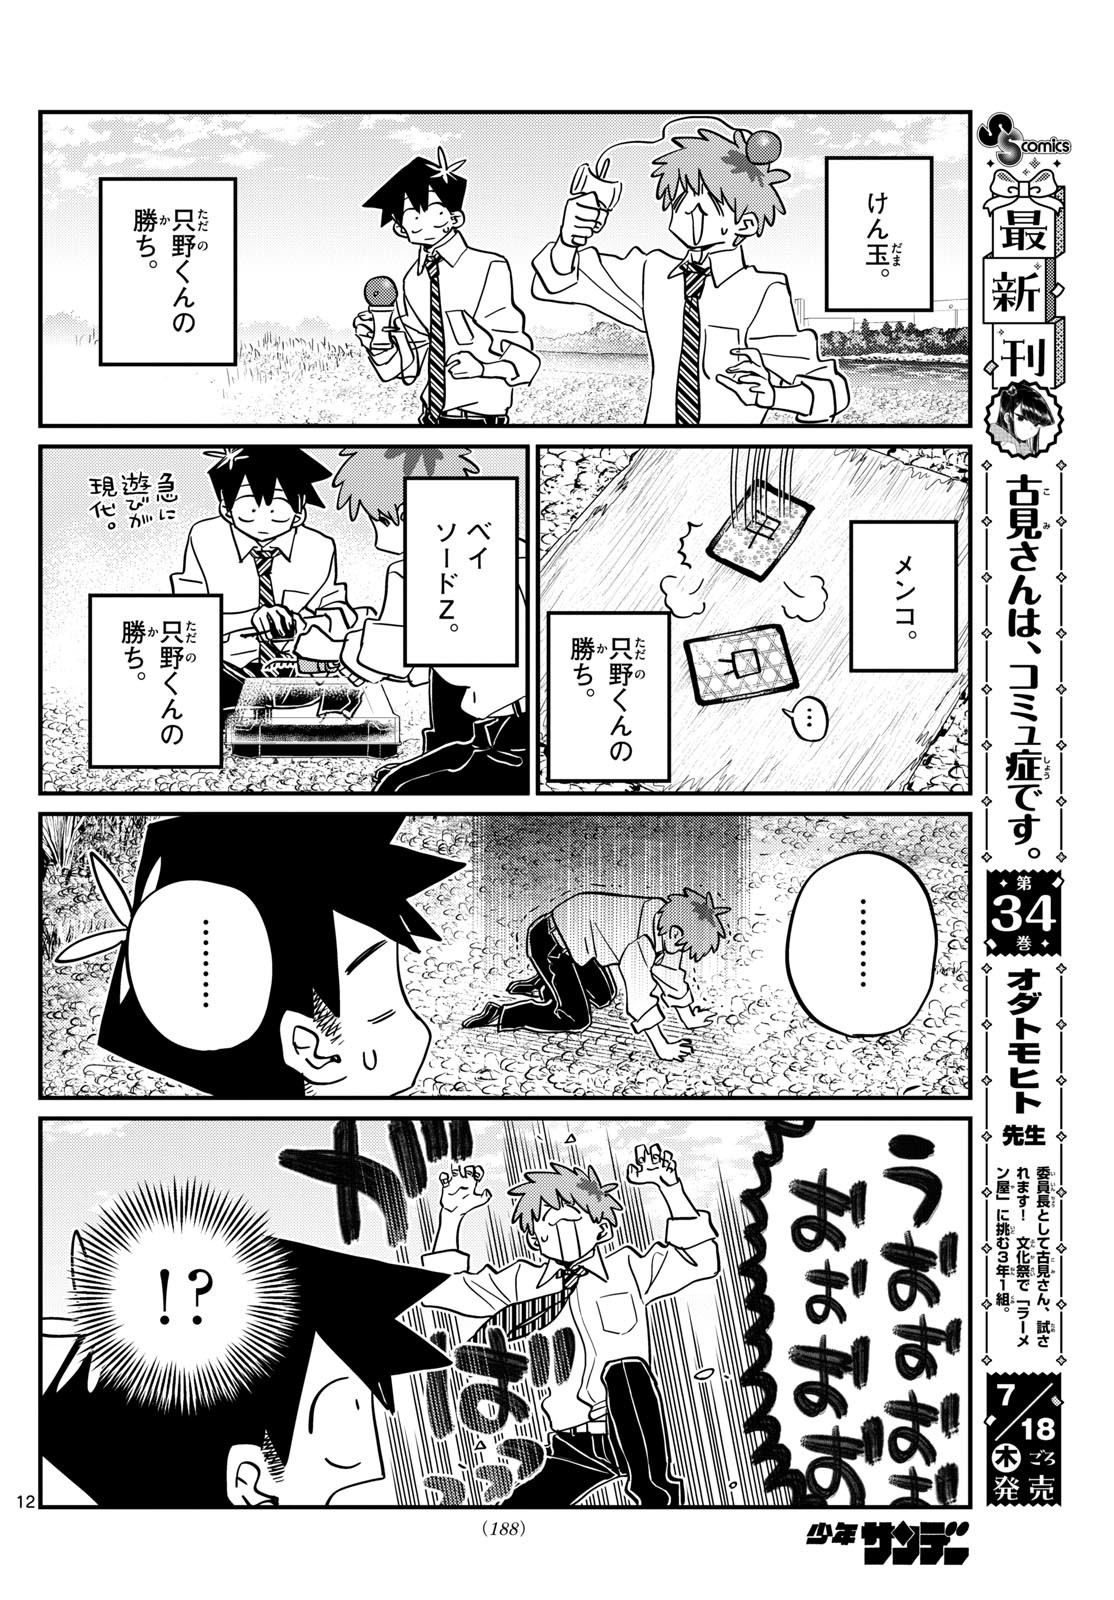 Komi-san wa Komyushou Desu - Chapter 471 - Page 7